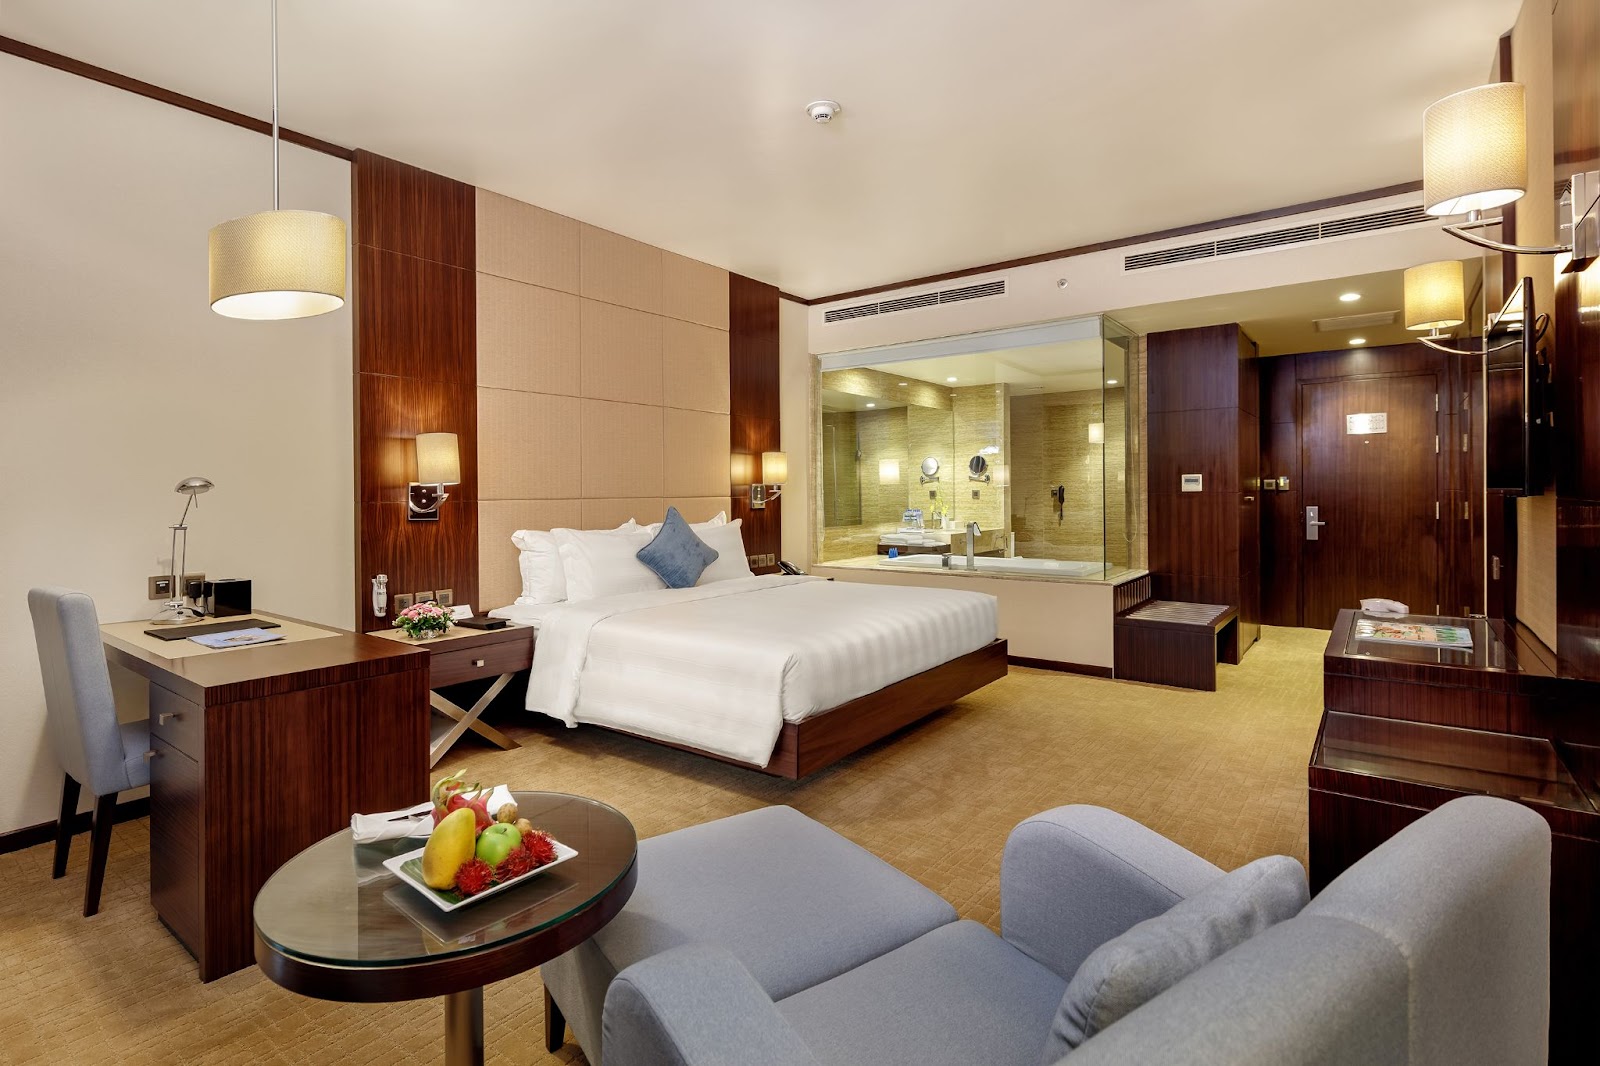 Du lịch Hạ Long cuối năm tại khách sạn 5 sao Wyndham Legend Ha Long - Wyndham Legend Ha Long - lựa chọn lý tưởng cho kỳ nghỉ cuối năm - Đa dạng lựa chọn phòng nghỉ cao cấp